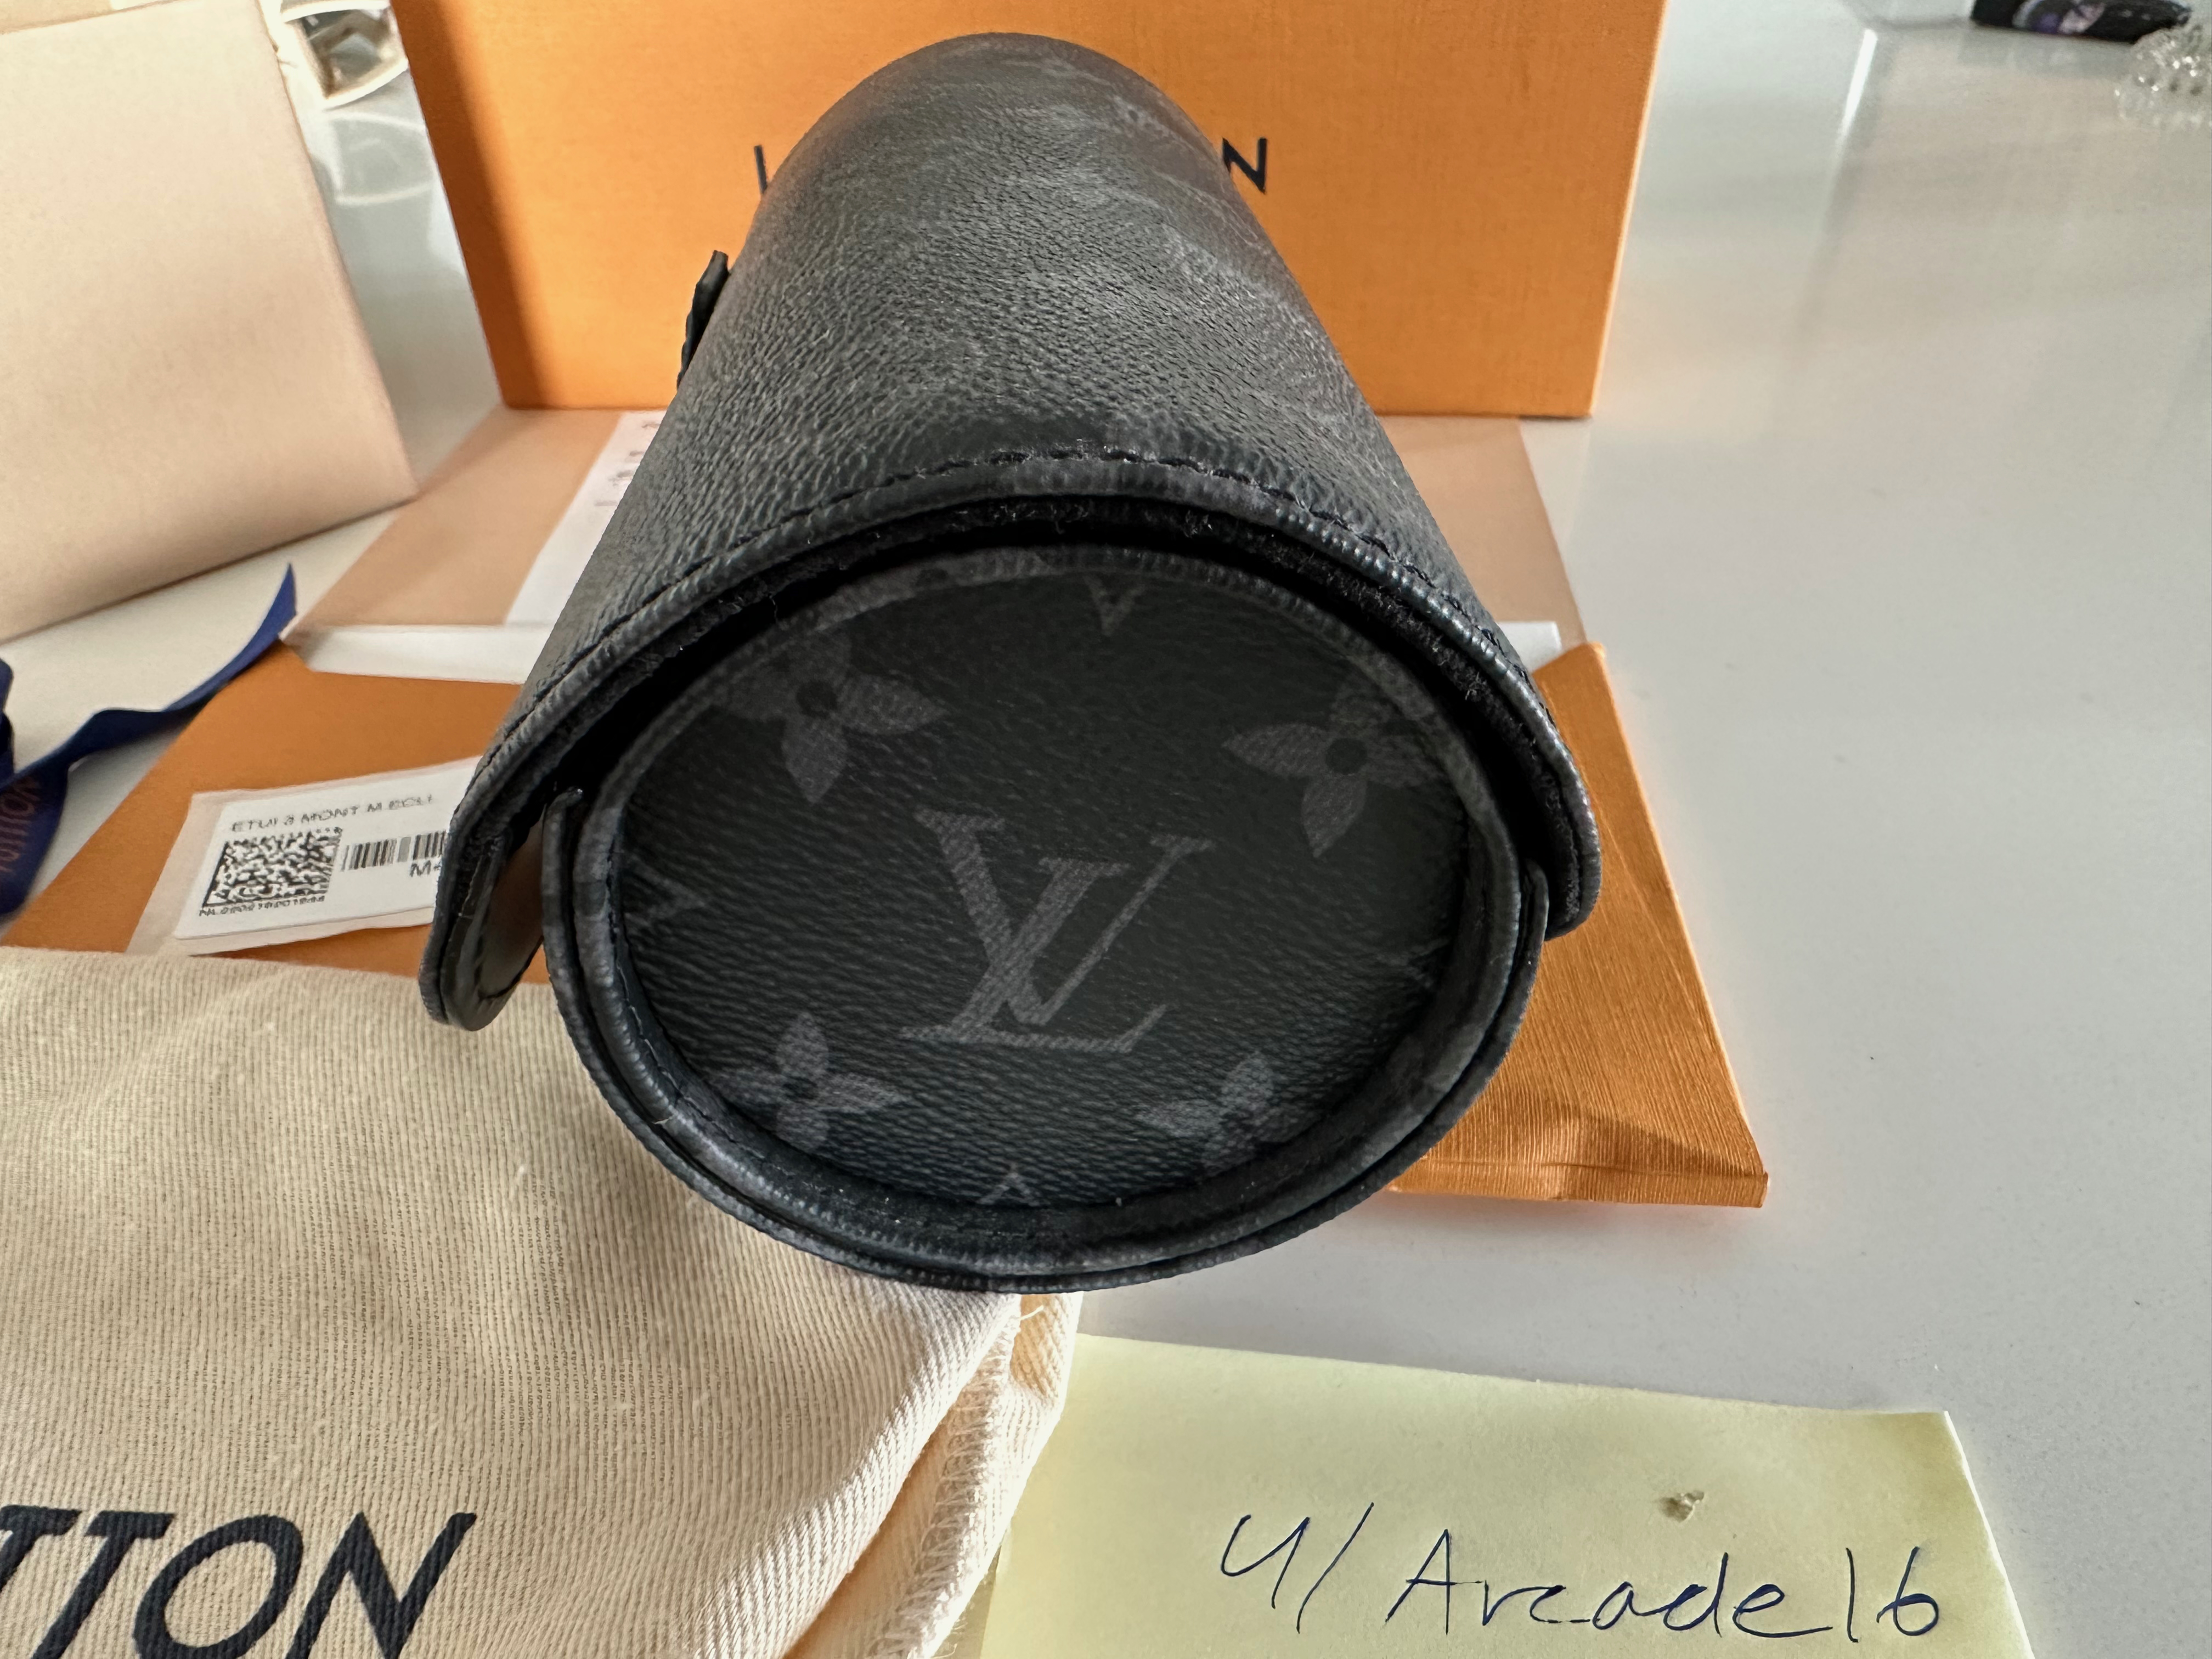 Louis Vuitton 3 Watch Roll